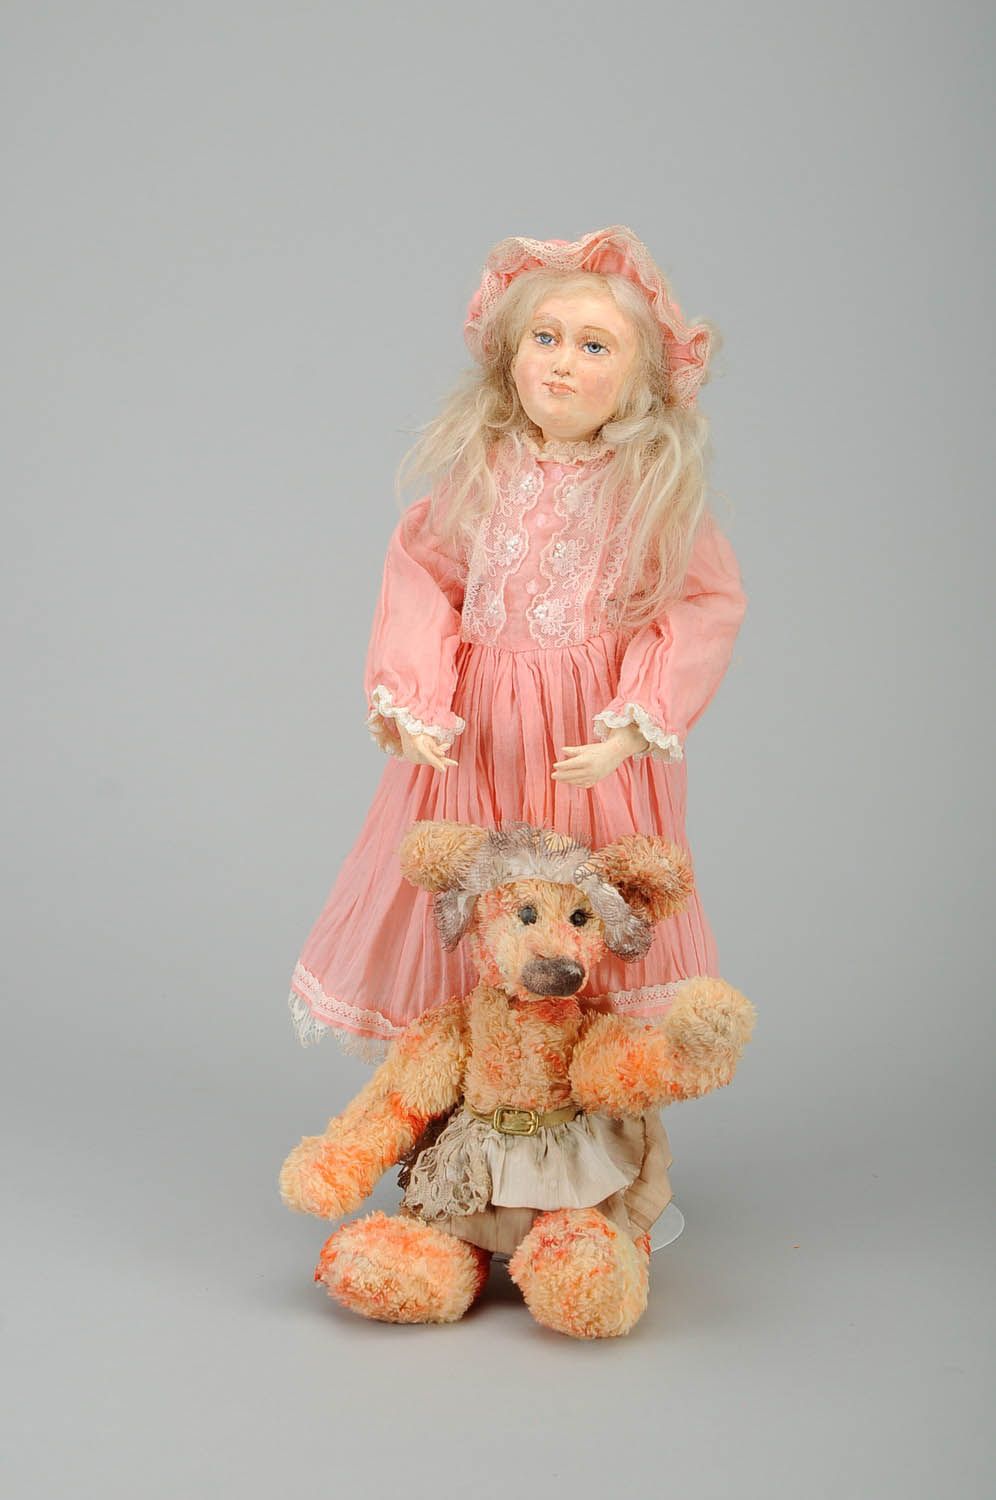 Авторская игровая кукла Маша и медведь фото 1